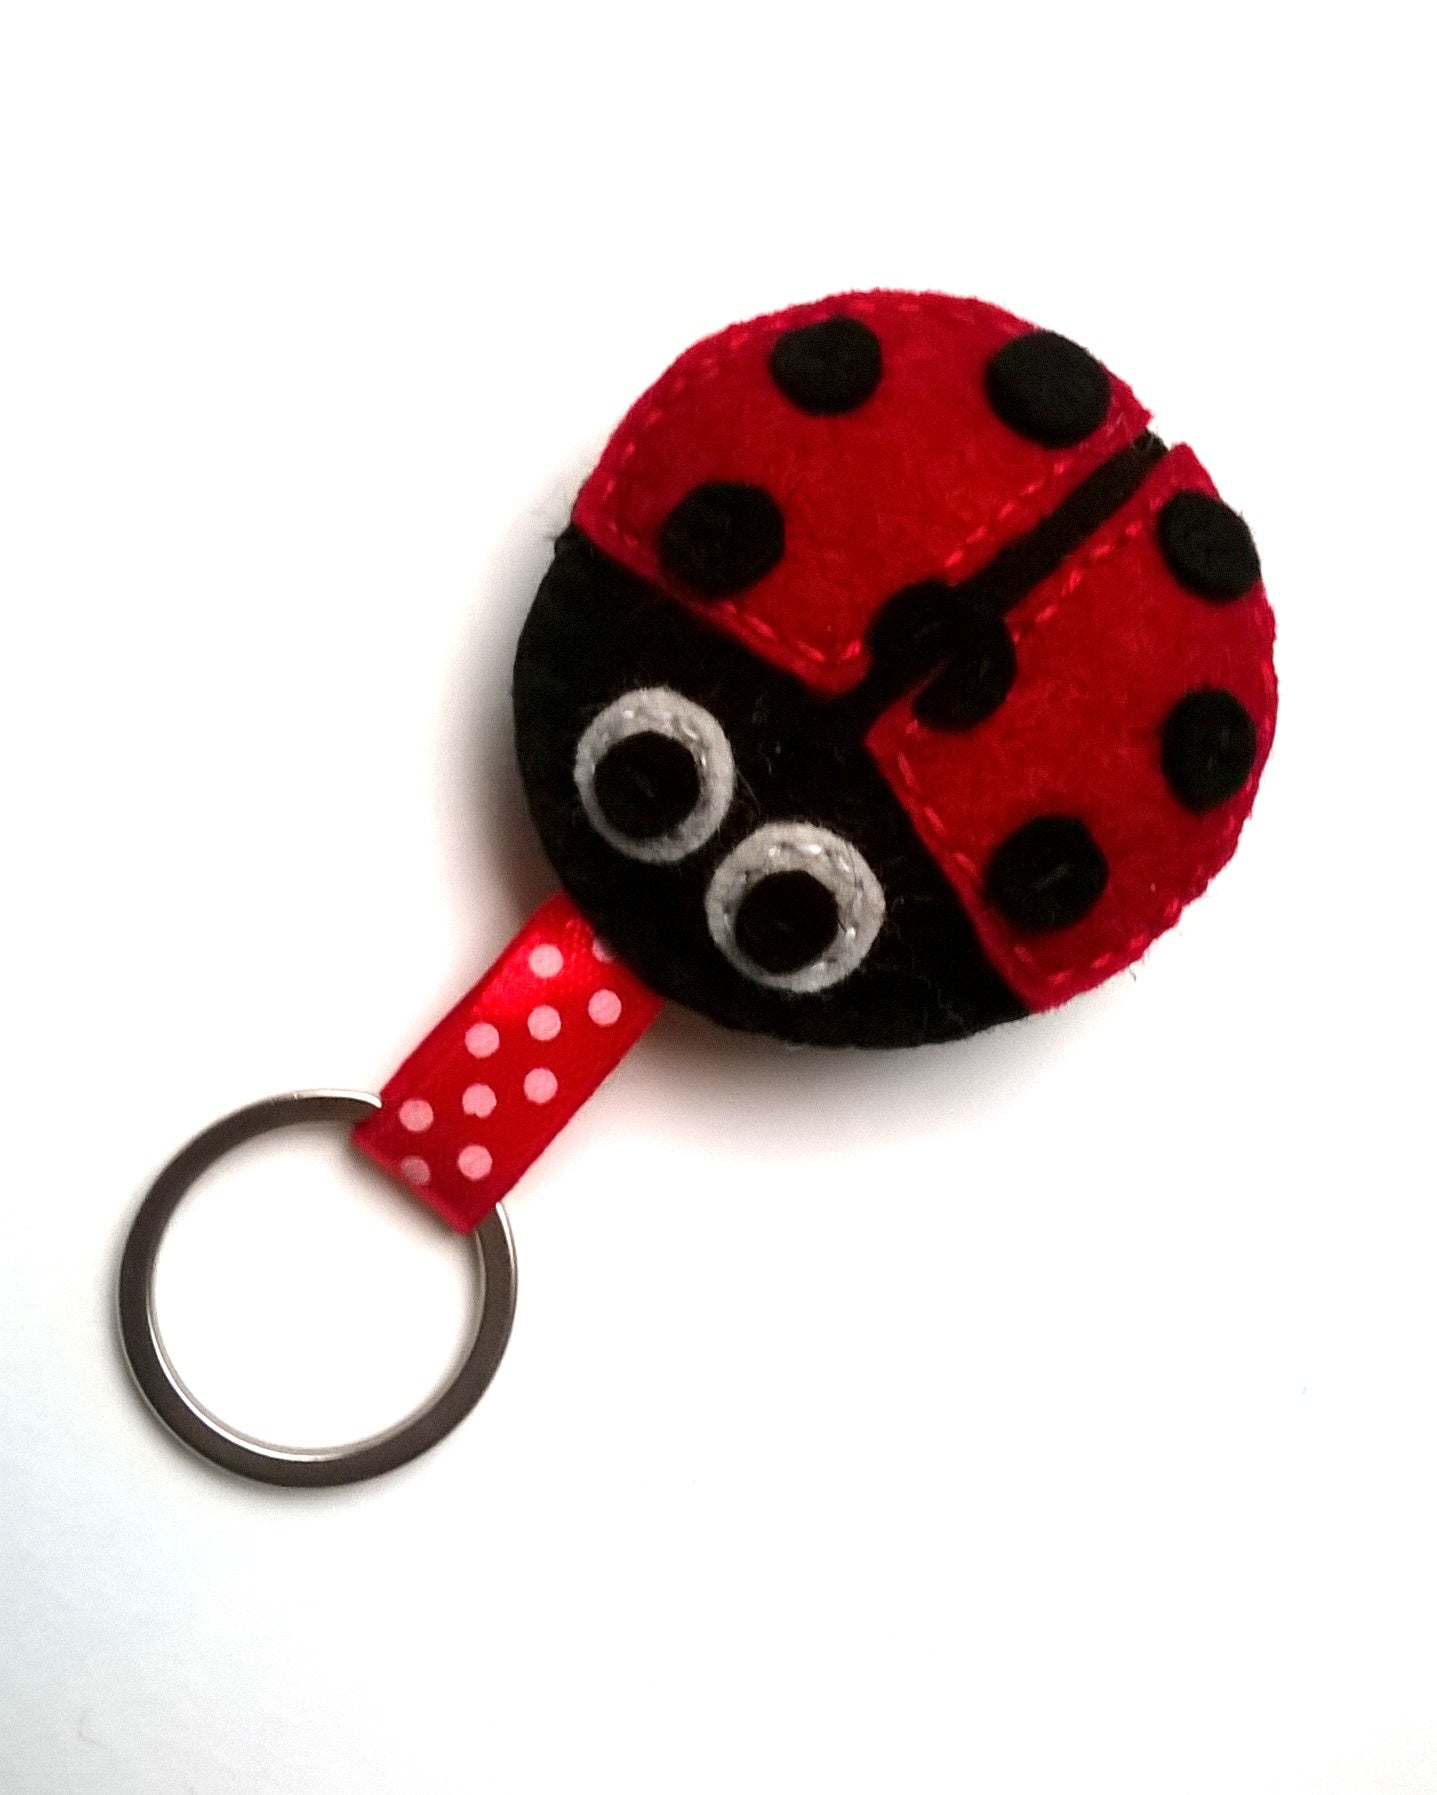 Felt ladybug keychain, felt ladybug key holder